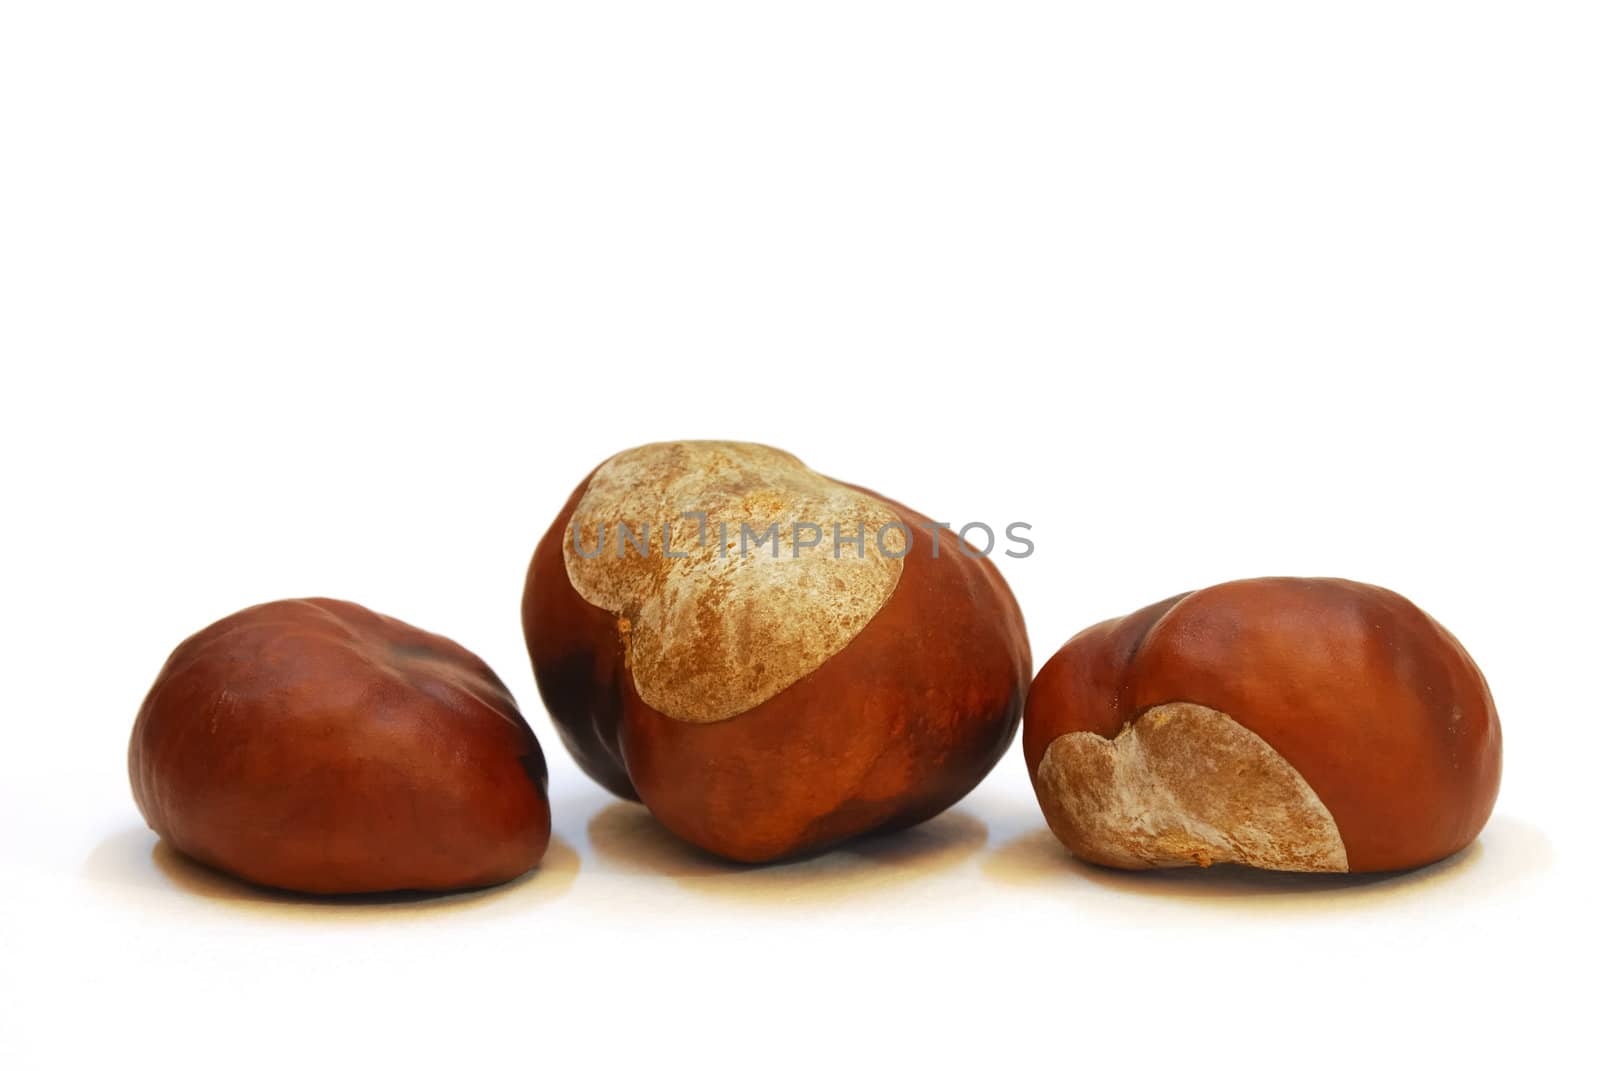 Chestnut fruit by zagart36